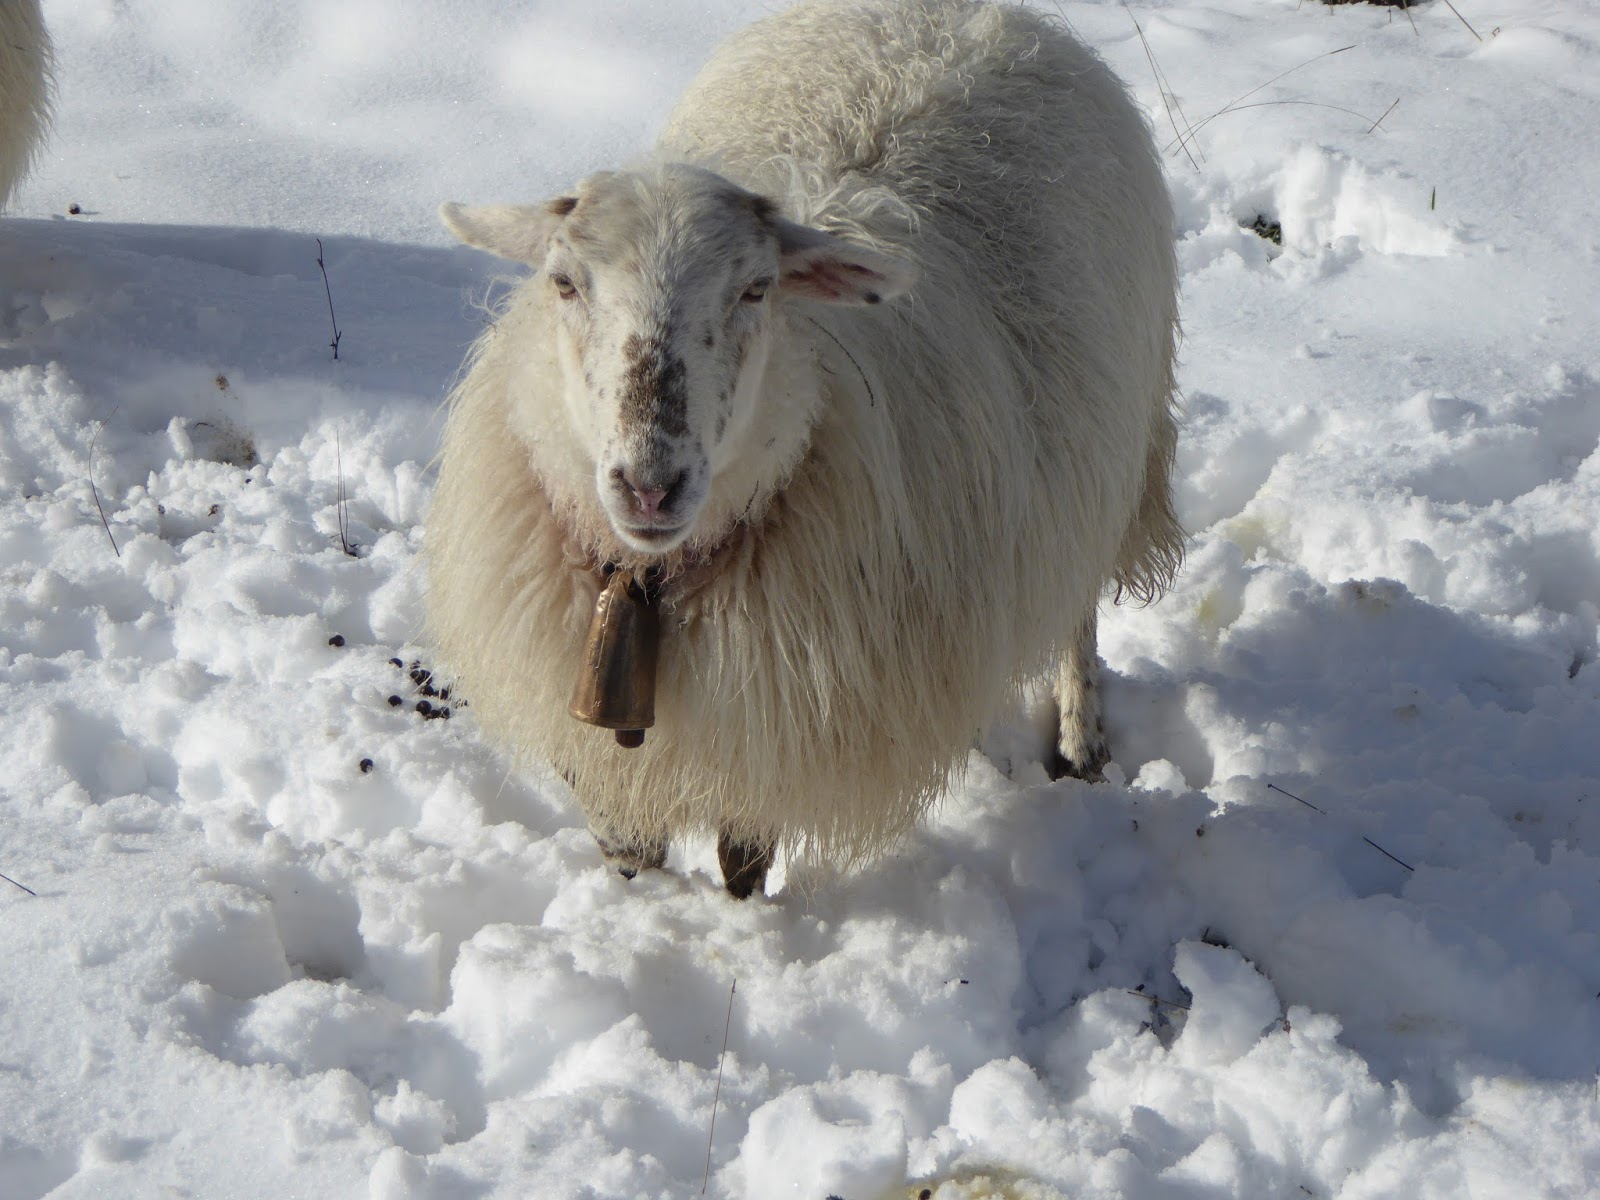 El pastoreo de ovejas adultas con su cencerro colgando de su